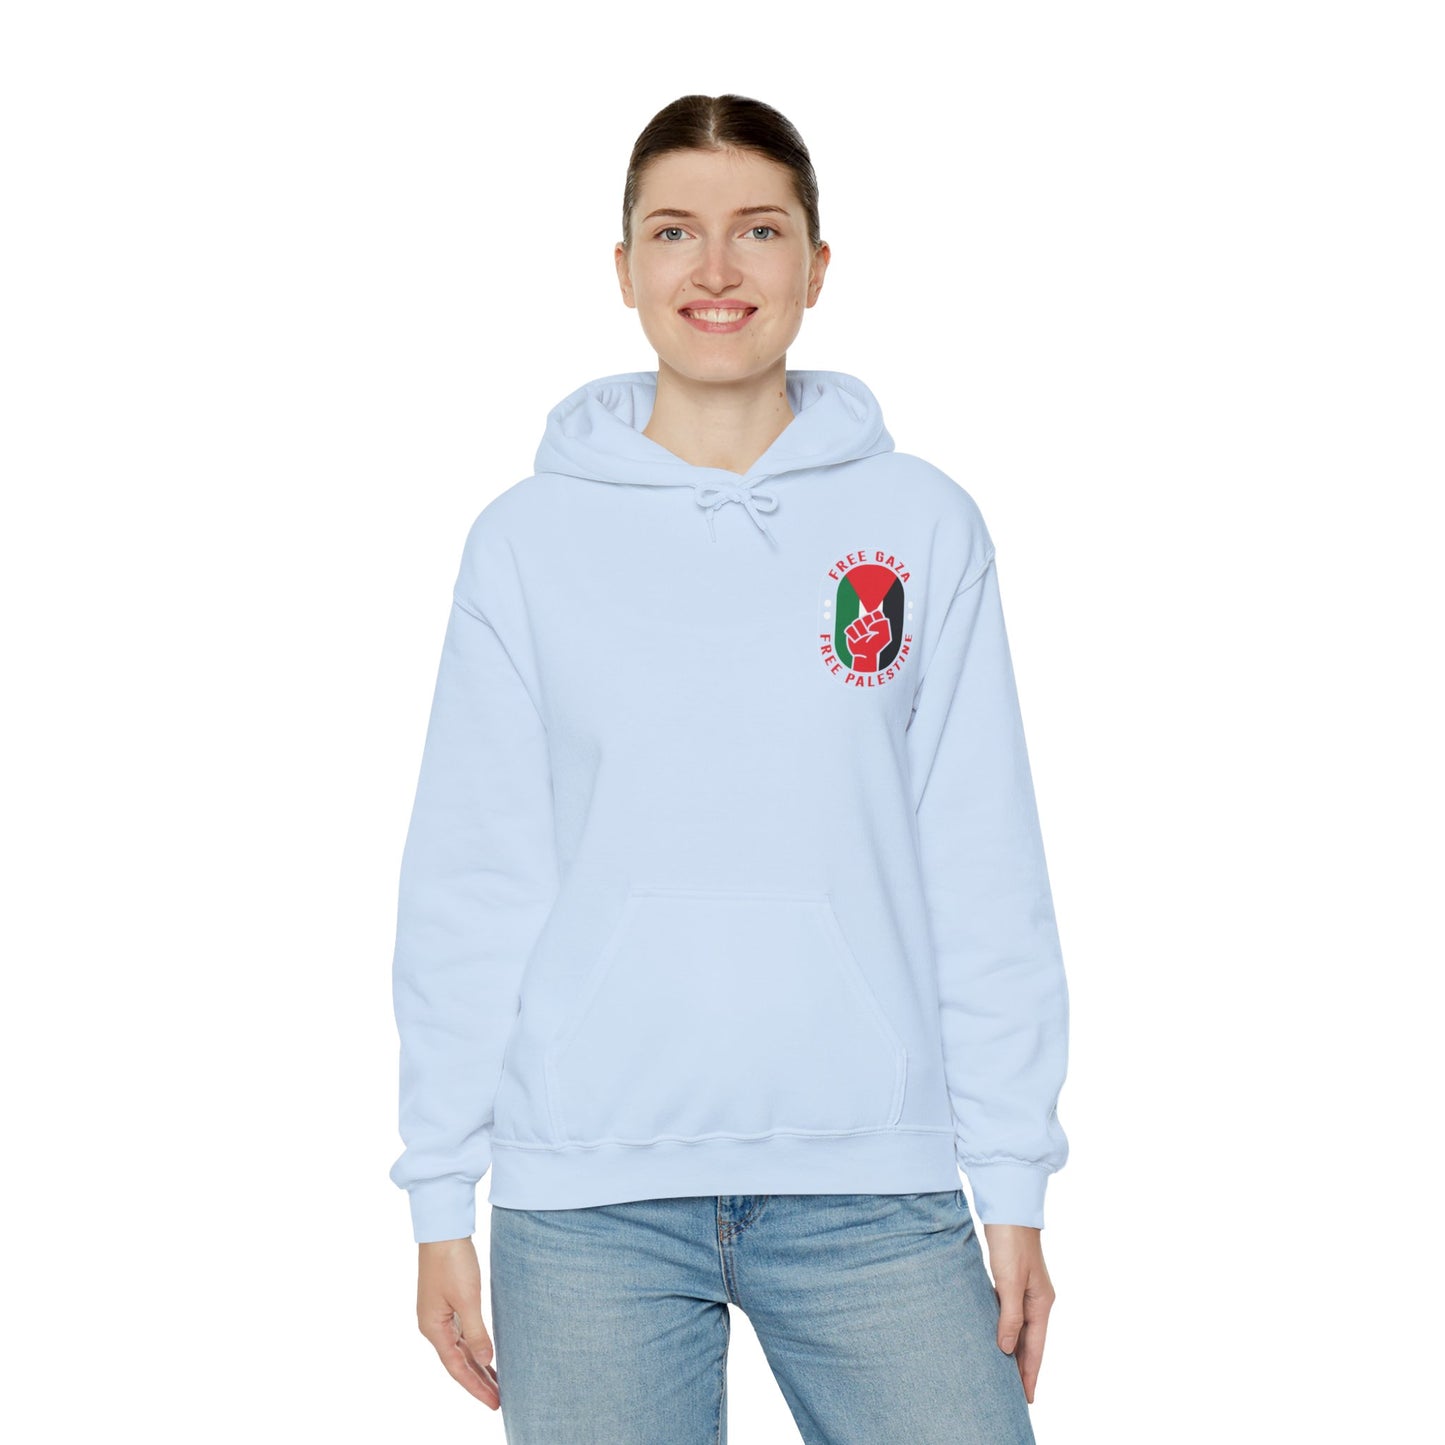 Unisex Heavy Blend FIT&FLIRT™ Hooded Sweatshirt